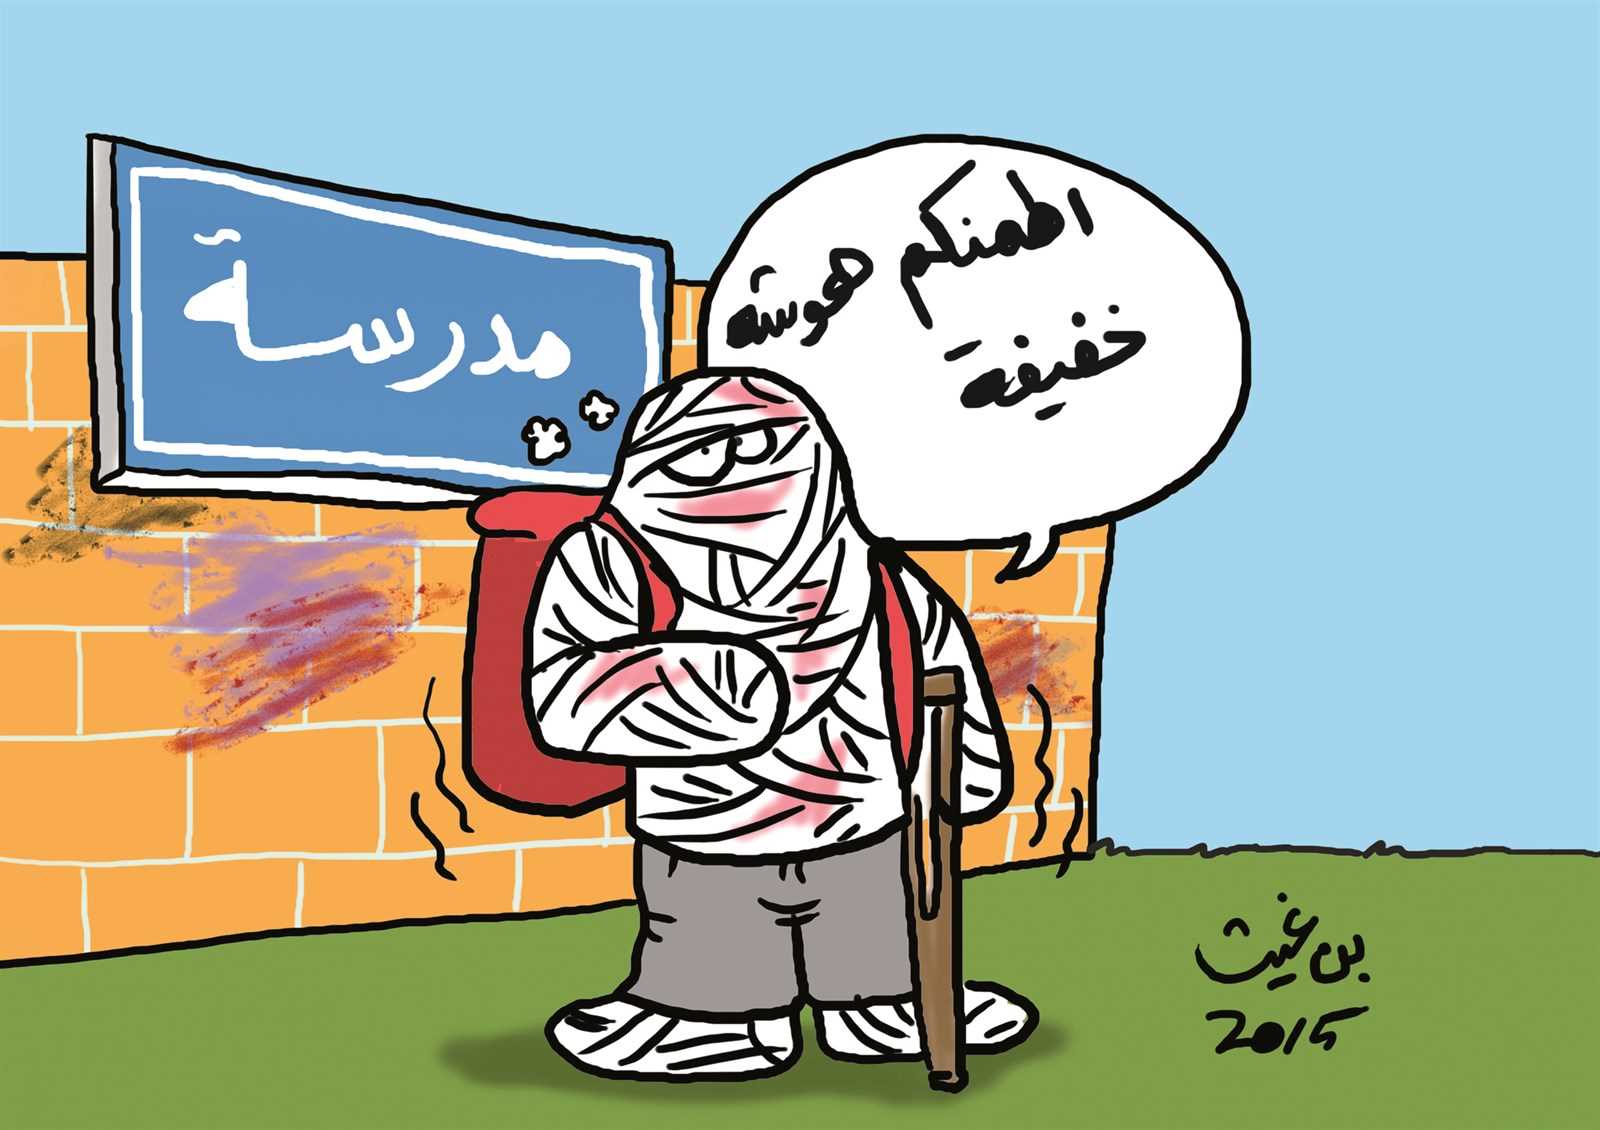 رسم كاريكاتير مضحك , صور راح تضحك من قلبك معاها صوري